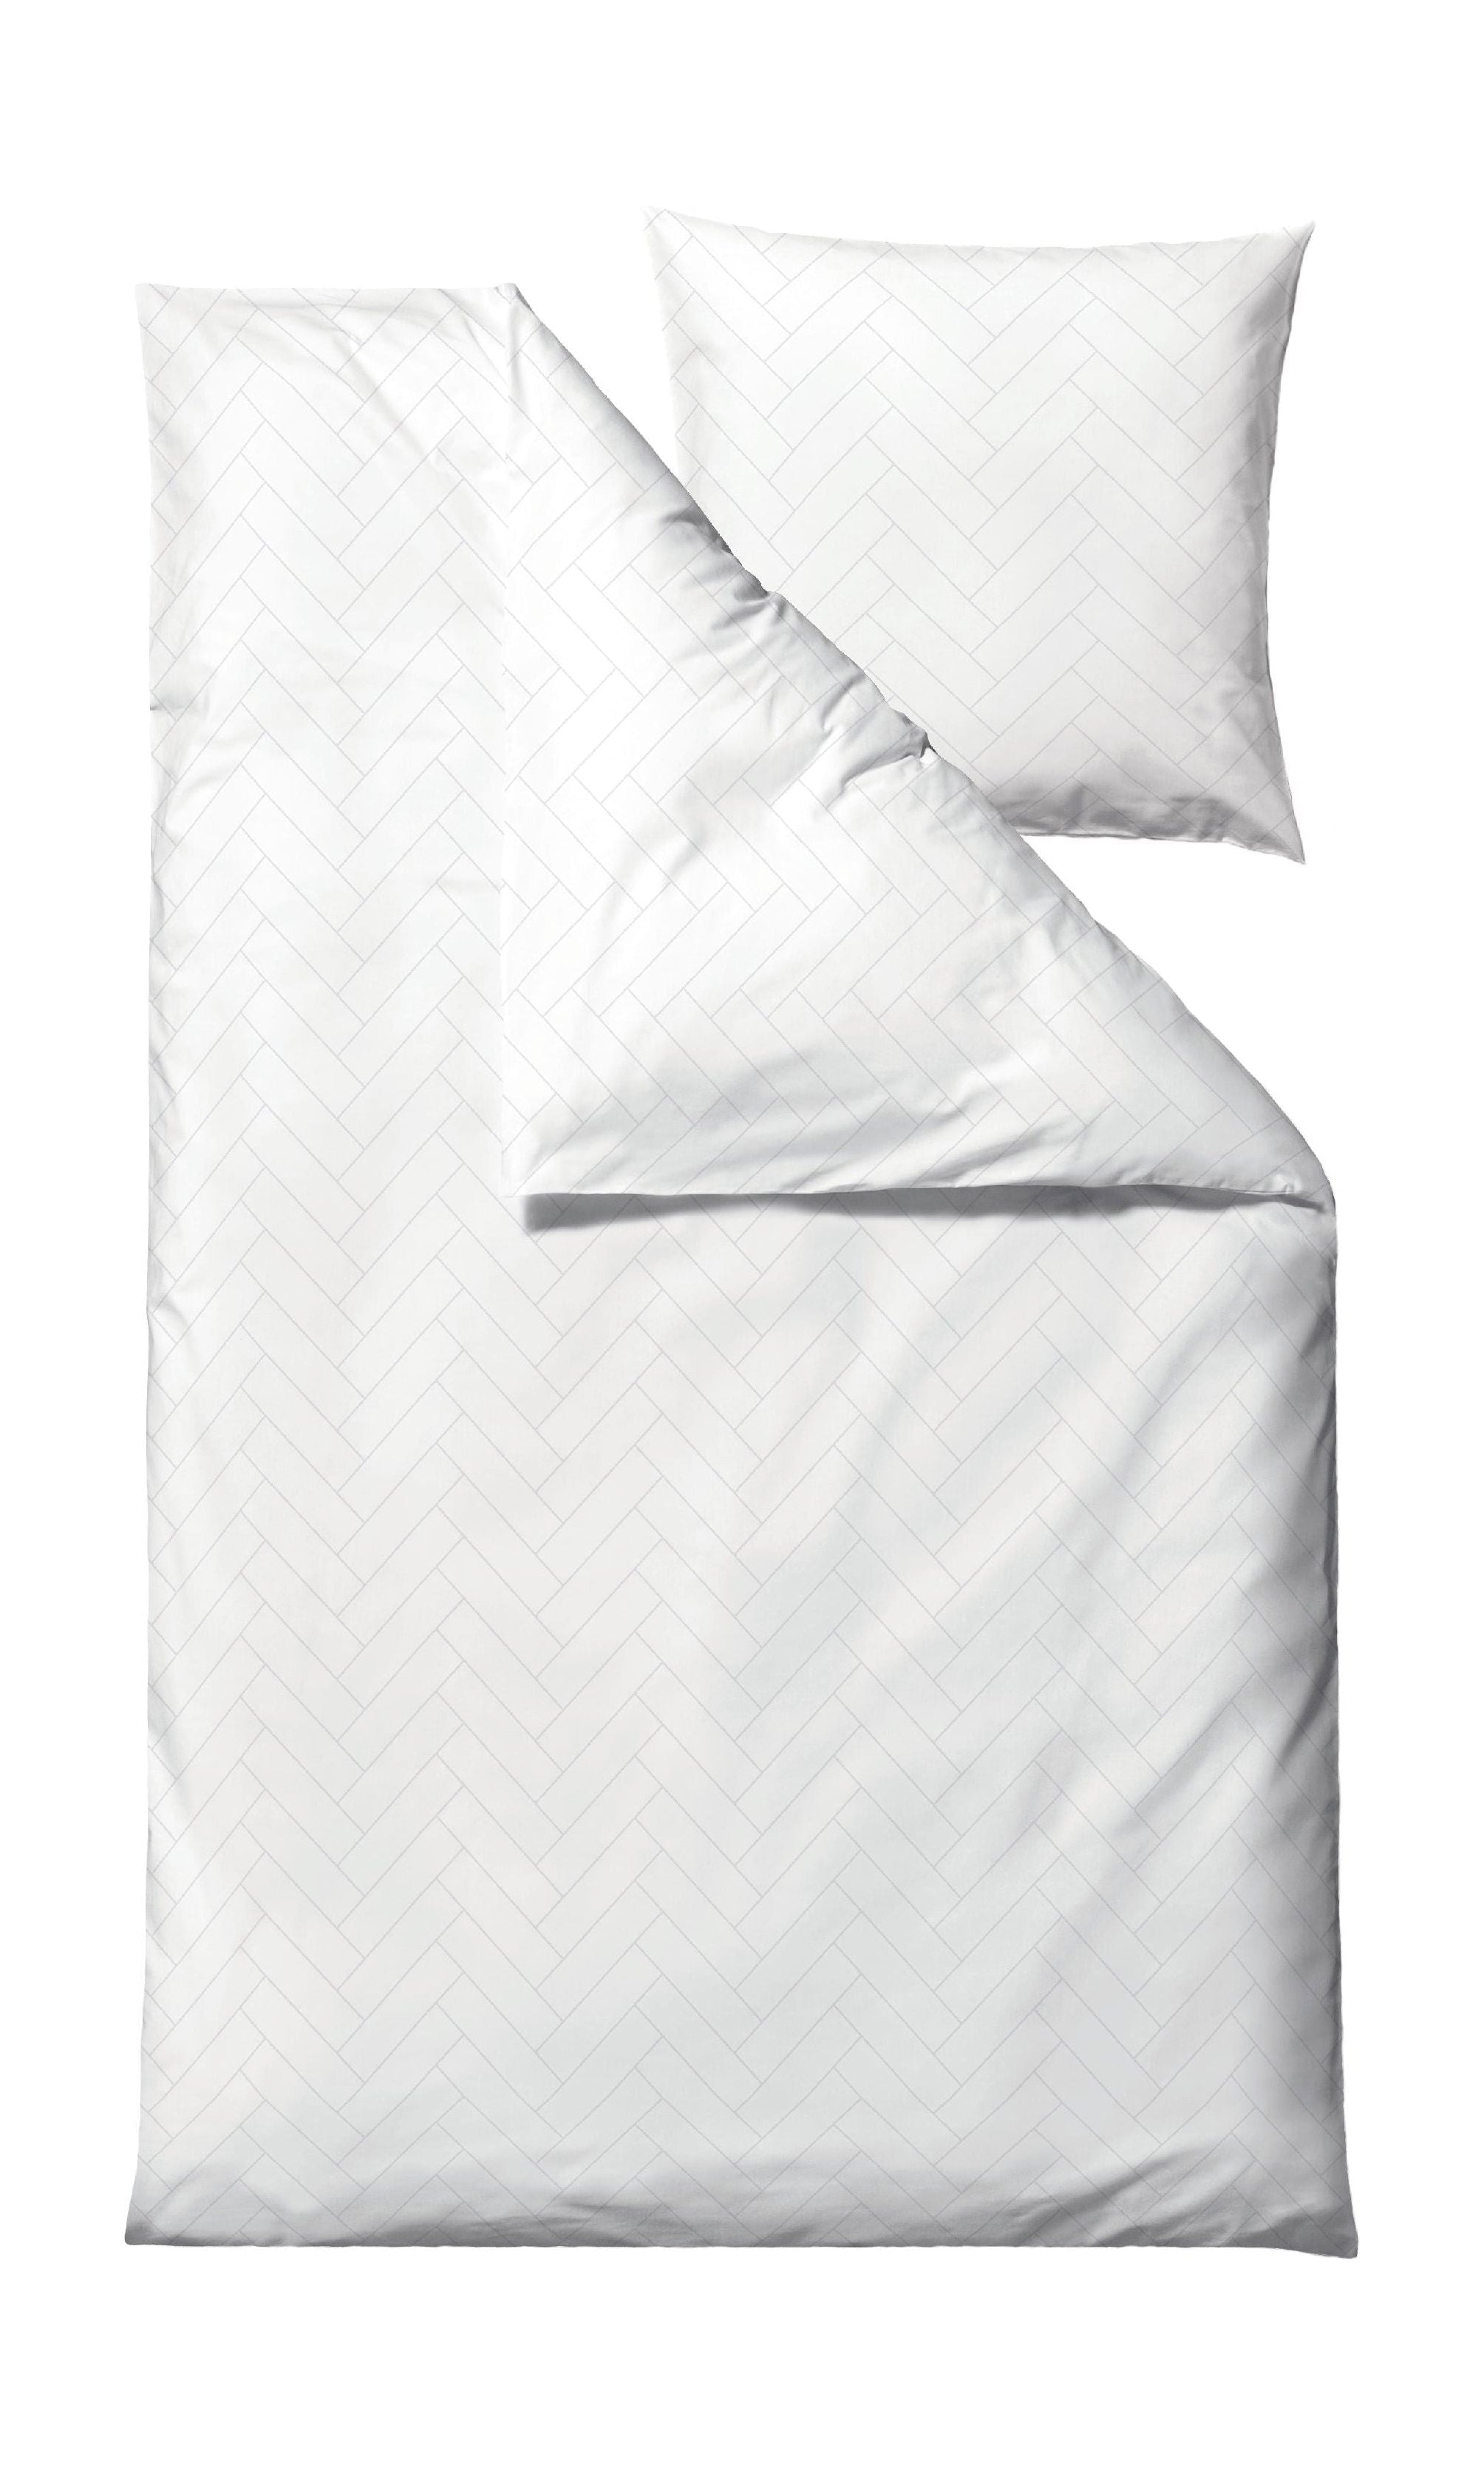 Söstahl brickor sängkläder 140x220 cm, vit